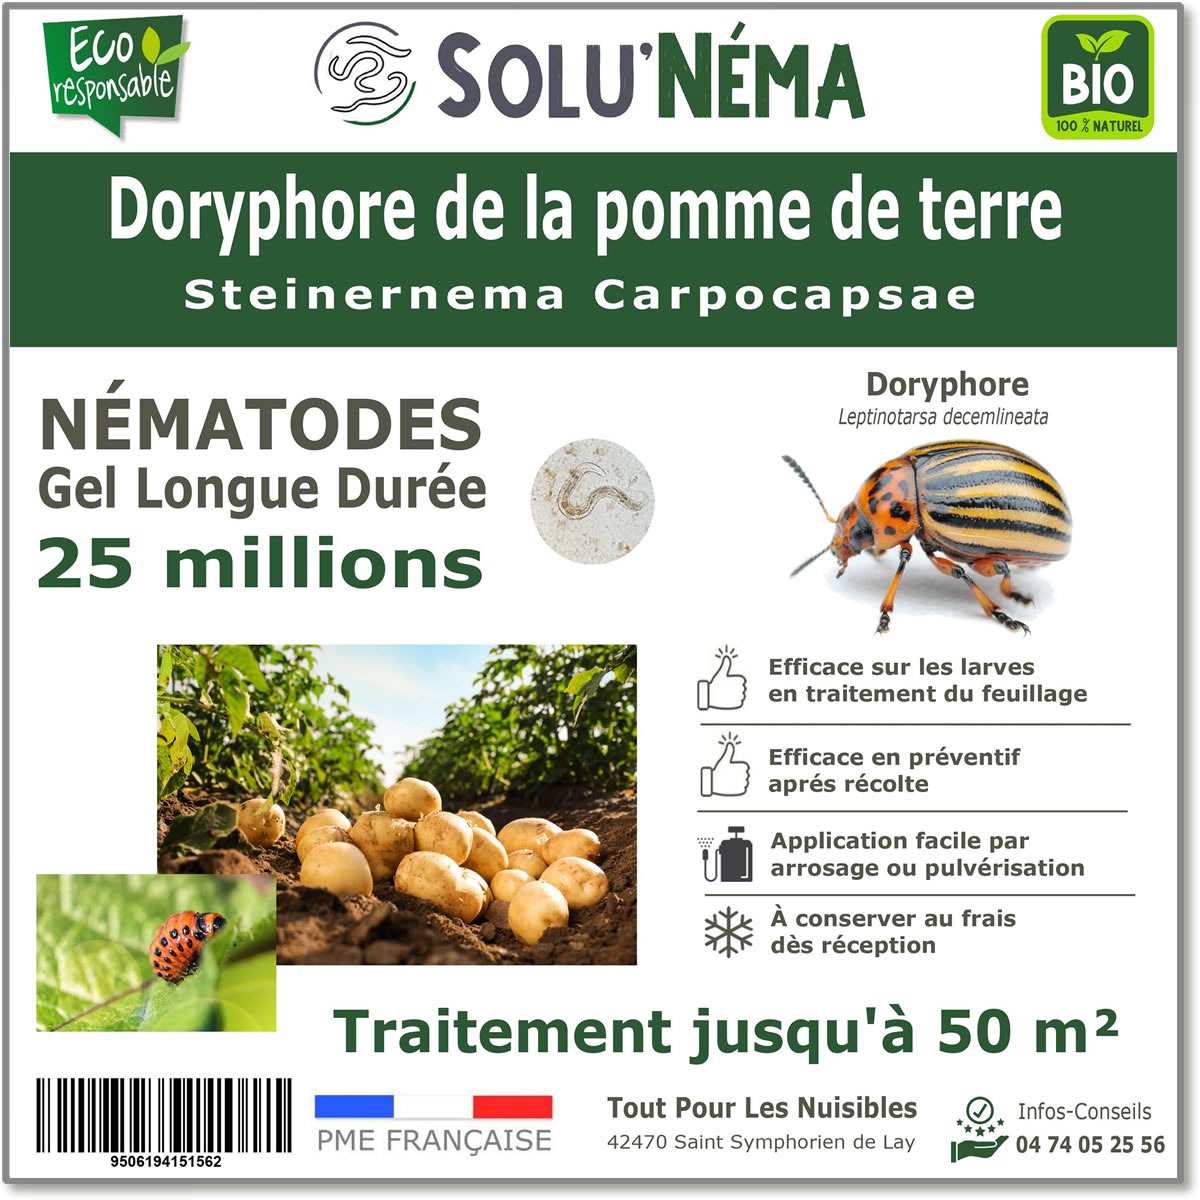 25 million nematodes to treat Colorado potato beetle larvae